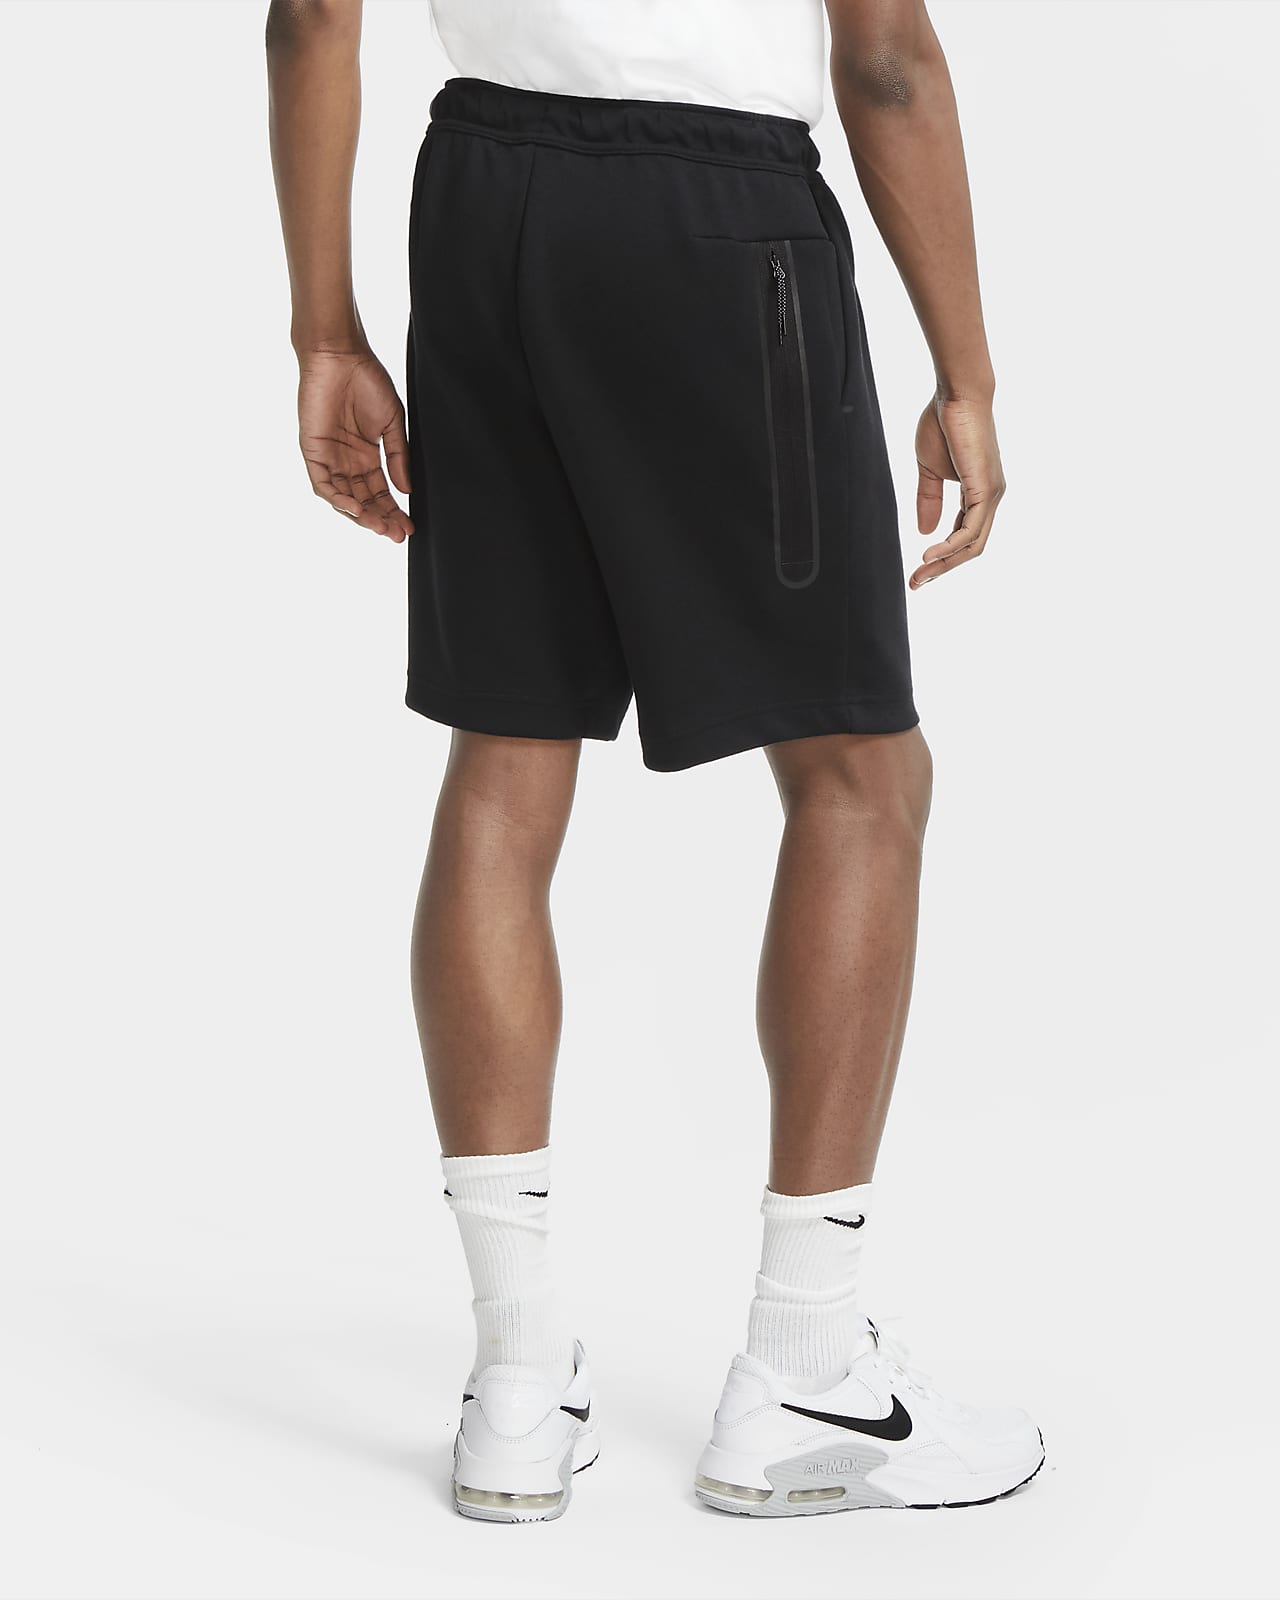 Gezond Veel gevaarlijke situaties samenzwering Nike Sportswear Tech Fleece Men's Shorts. Nike LU